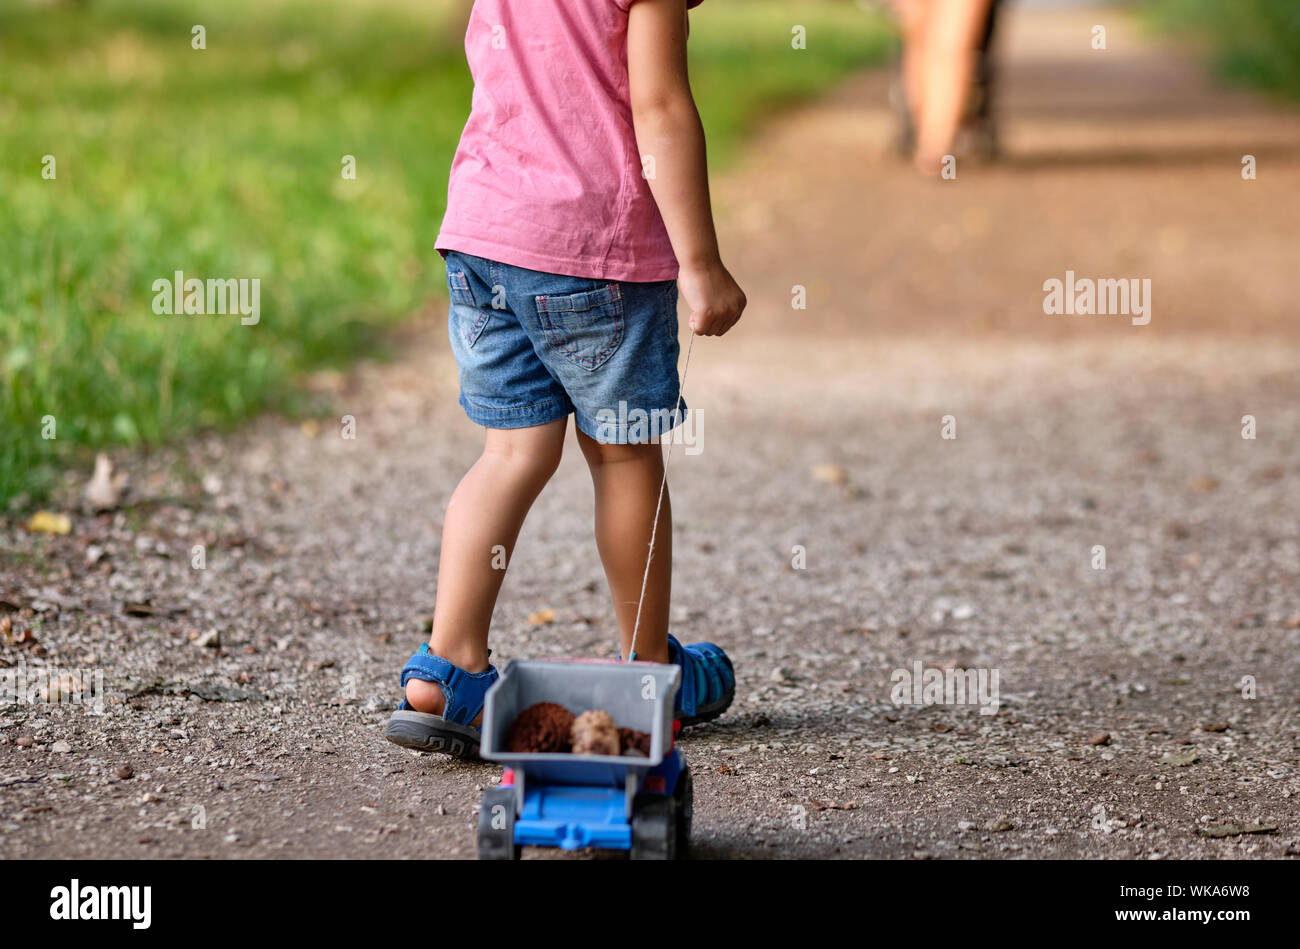 Rückansicht des unteren Abschnitt von einem 3-4 jährigen Kind im Sommer closthing Ziehen einer Spielzeug-LKW mit Kegel in Es Stockfoto